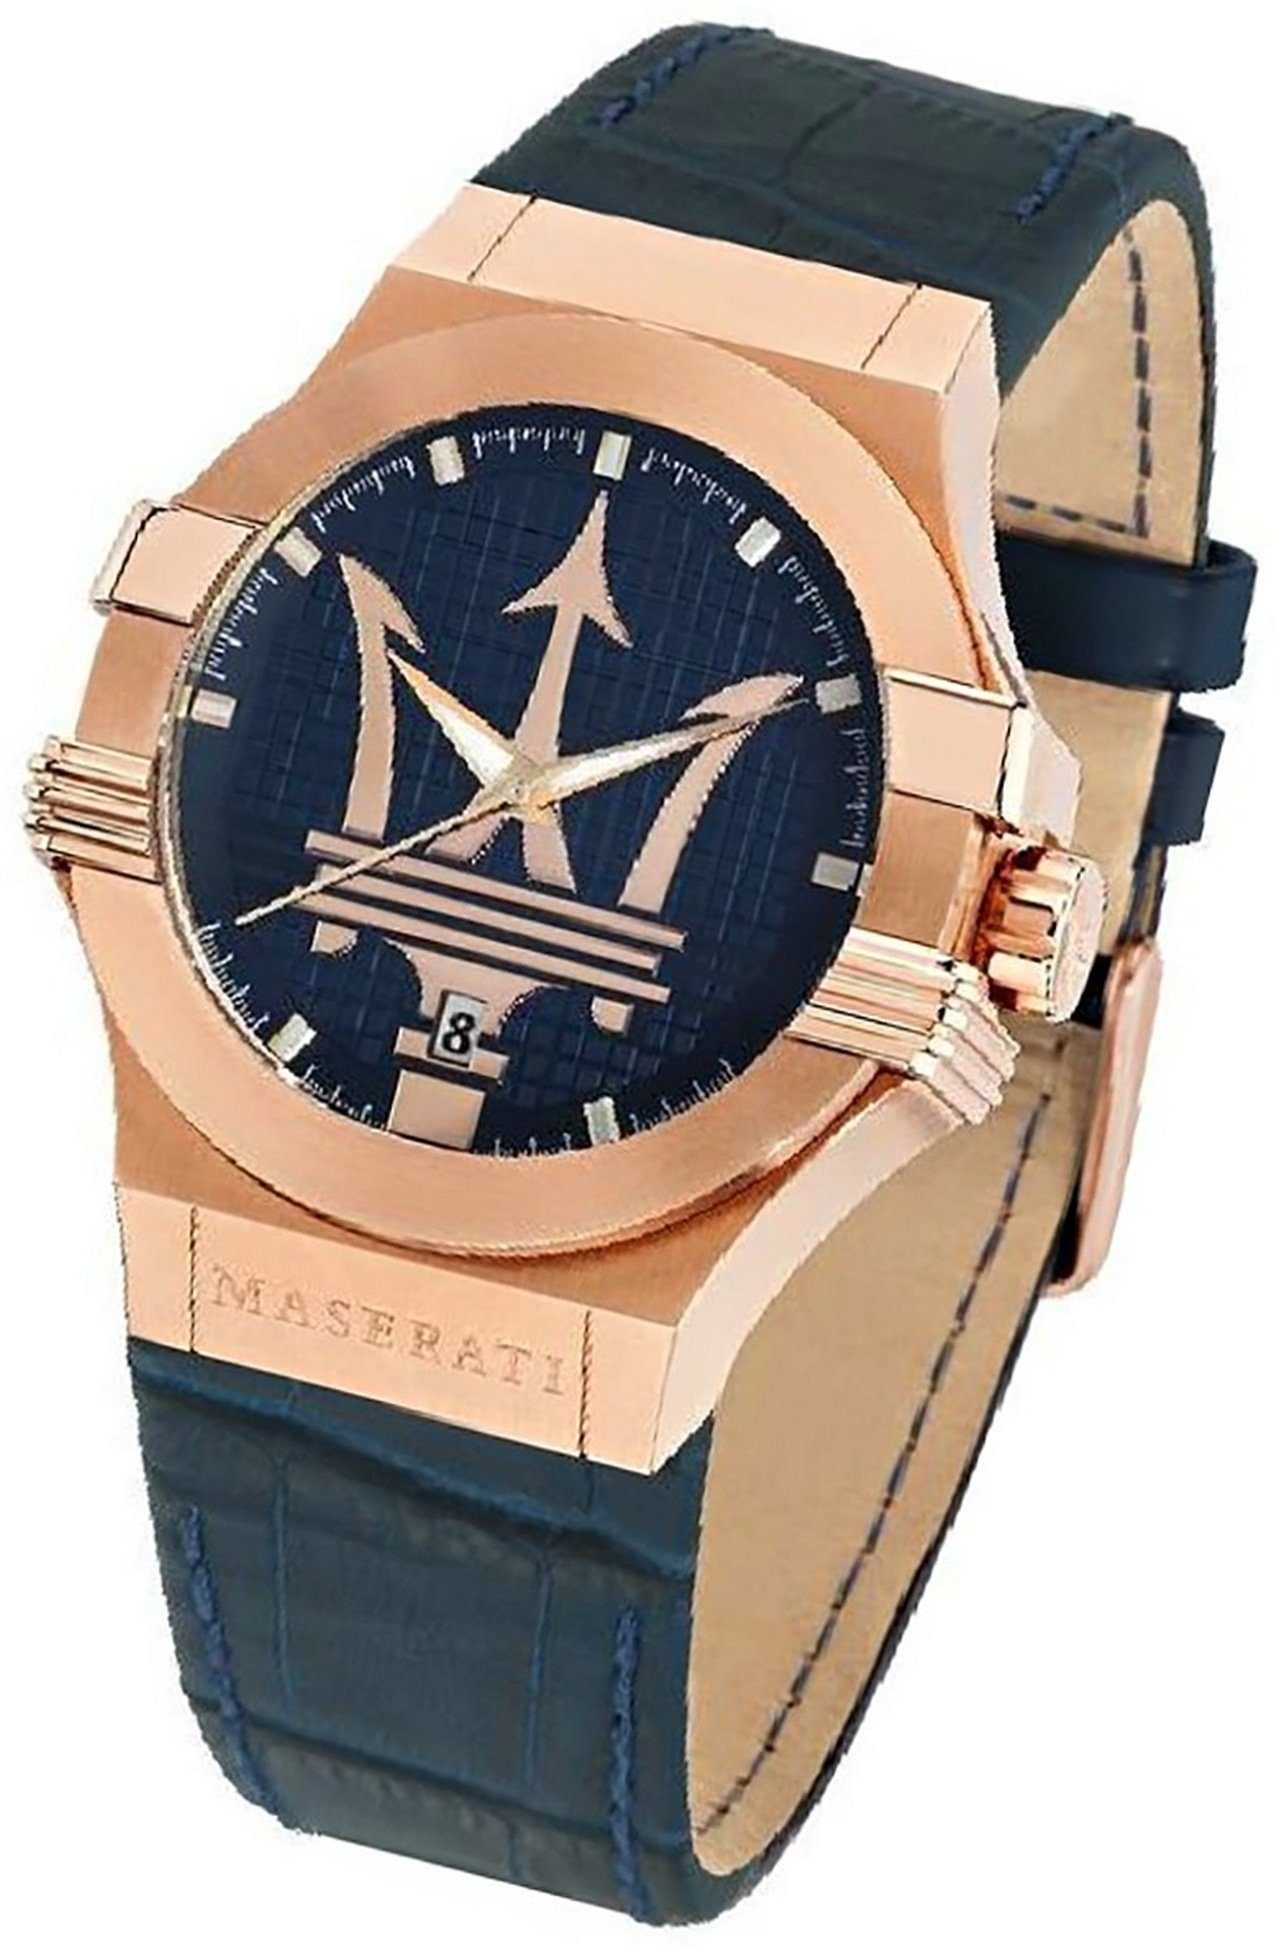 MASERATI Quarzuhr Maserati Leder Armband-Uhr Analog, Herrenuhr Lederarmband, rundes Gehäuse, groß (ca. 40mm) blau